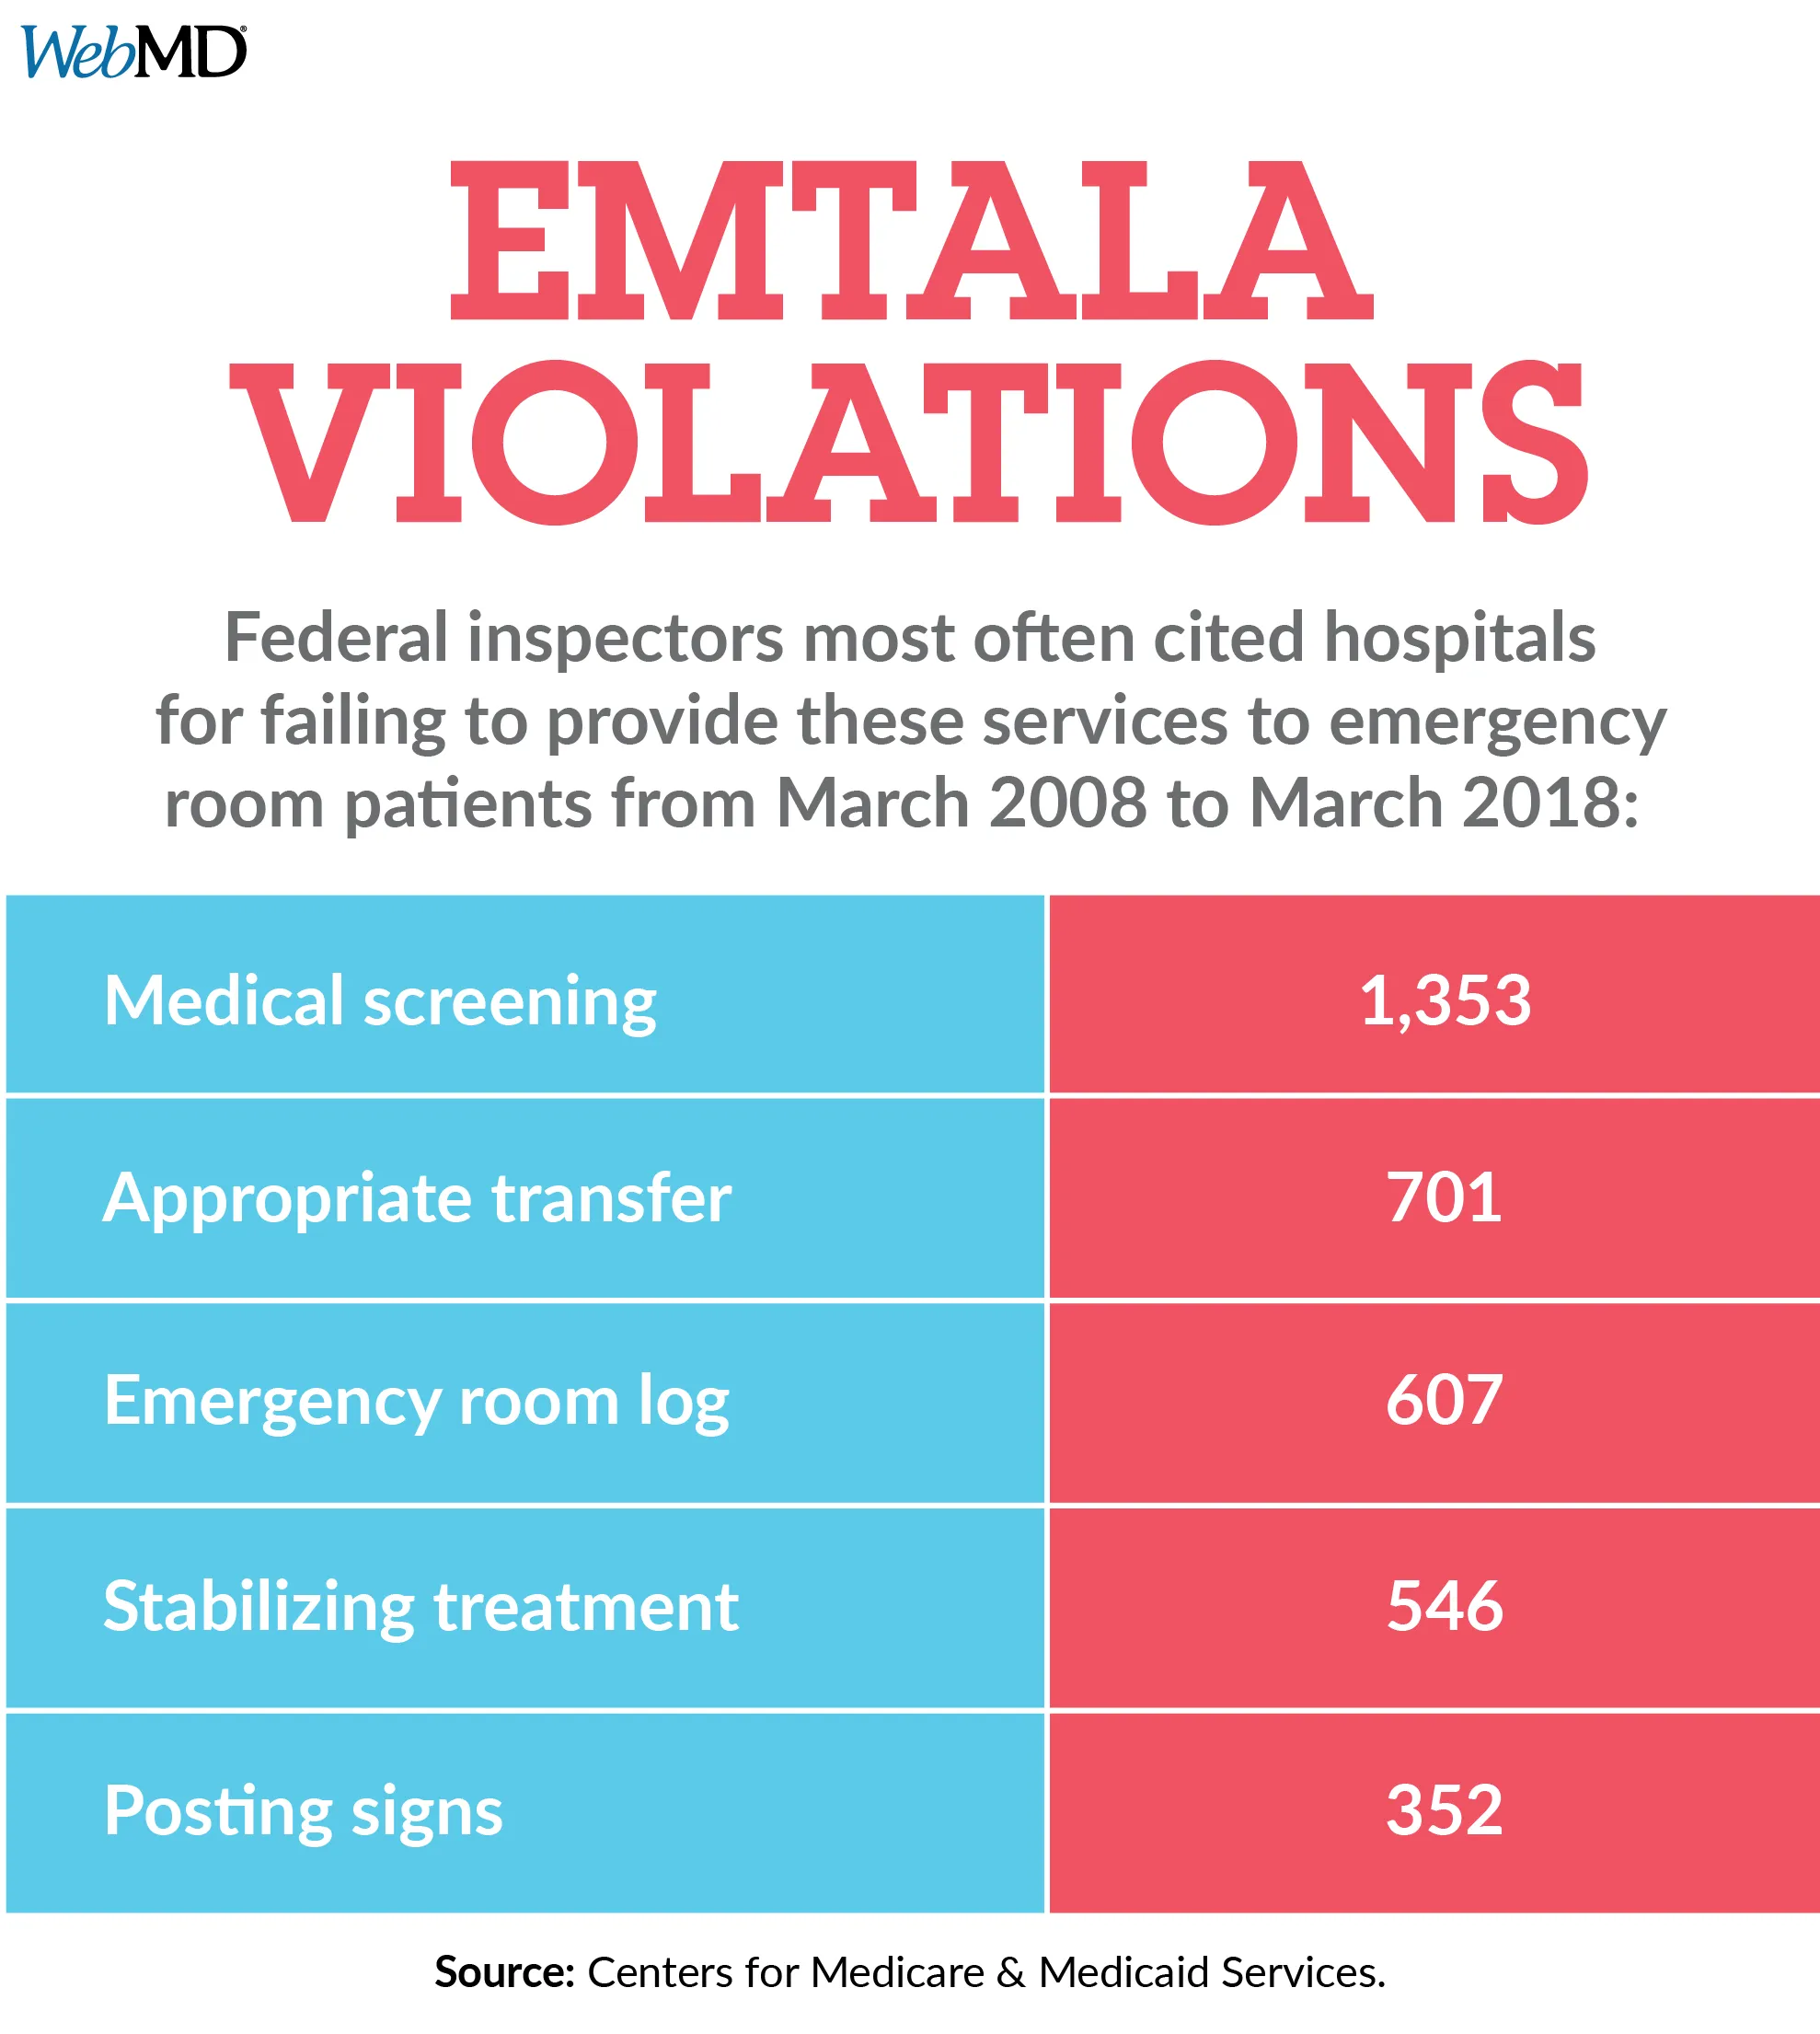 Emtala violations